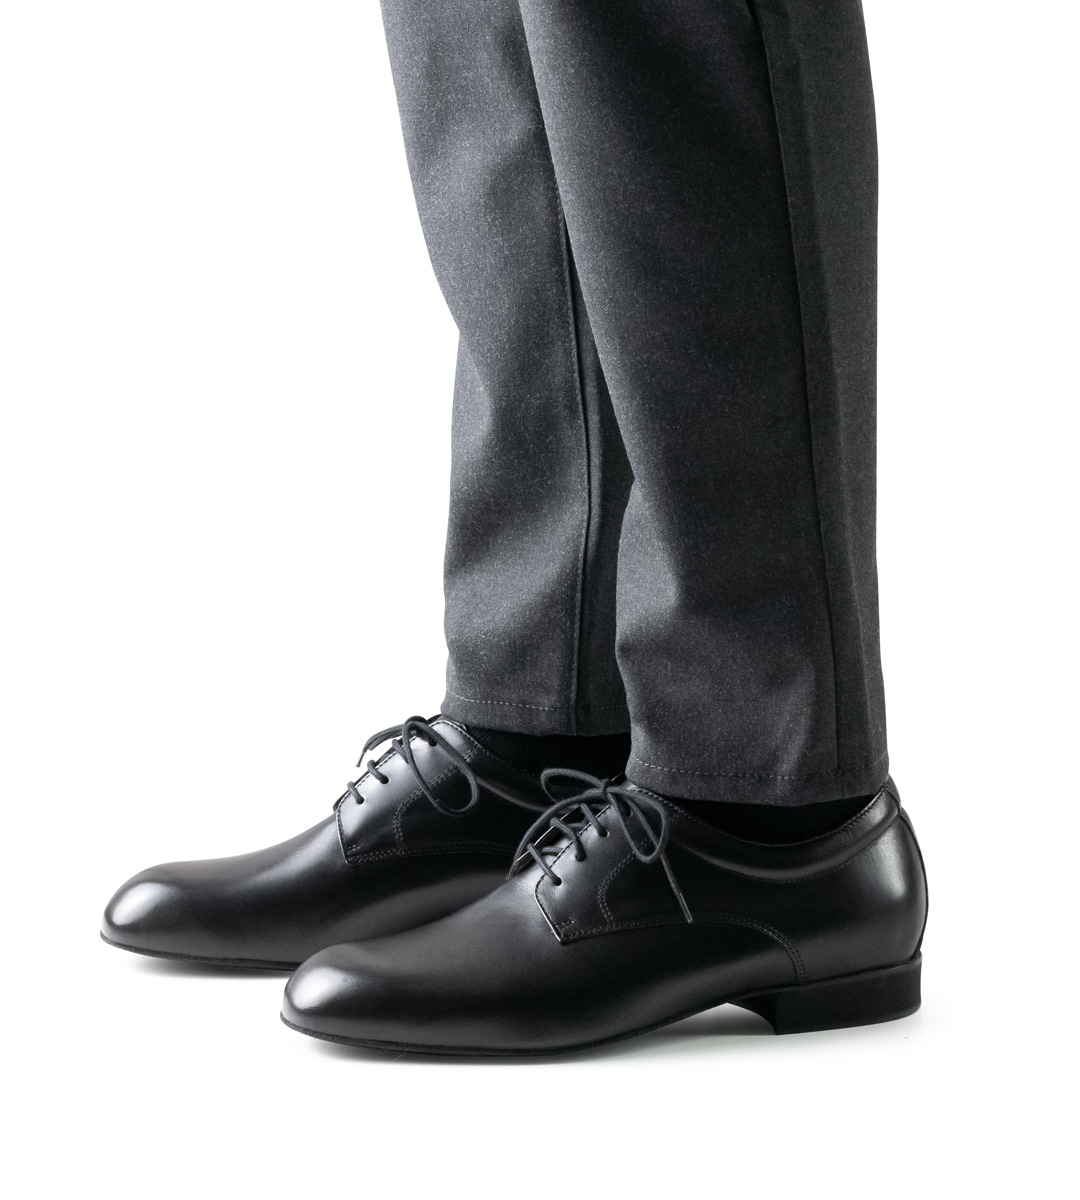 schwarzer Herrentanzschuh mit 2 cm hohem Absatz in Verbindung mit Hose in grau